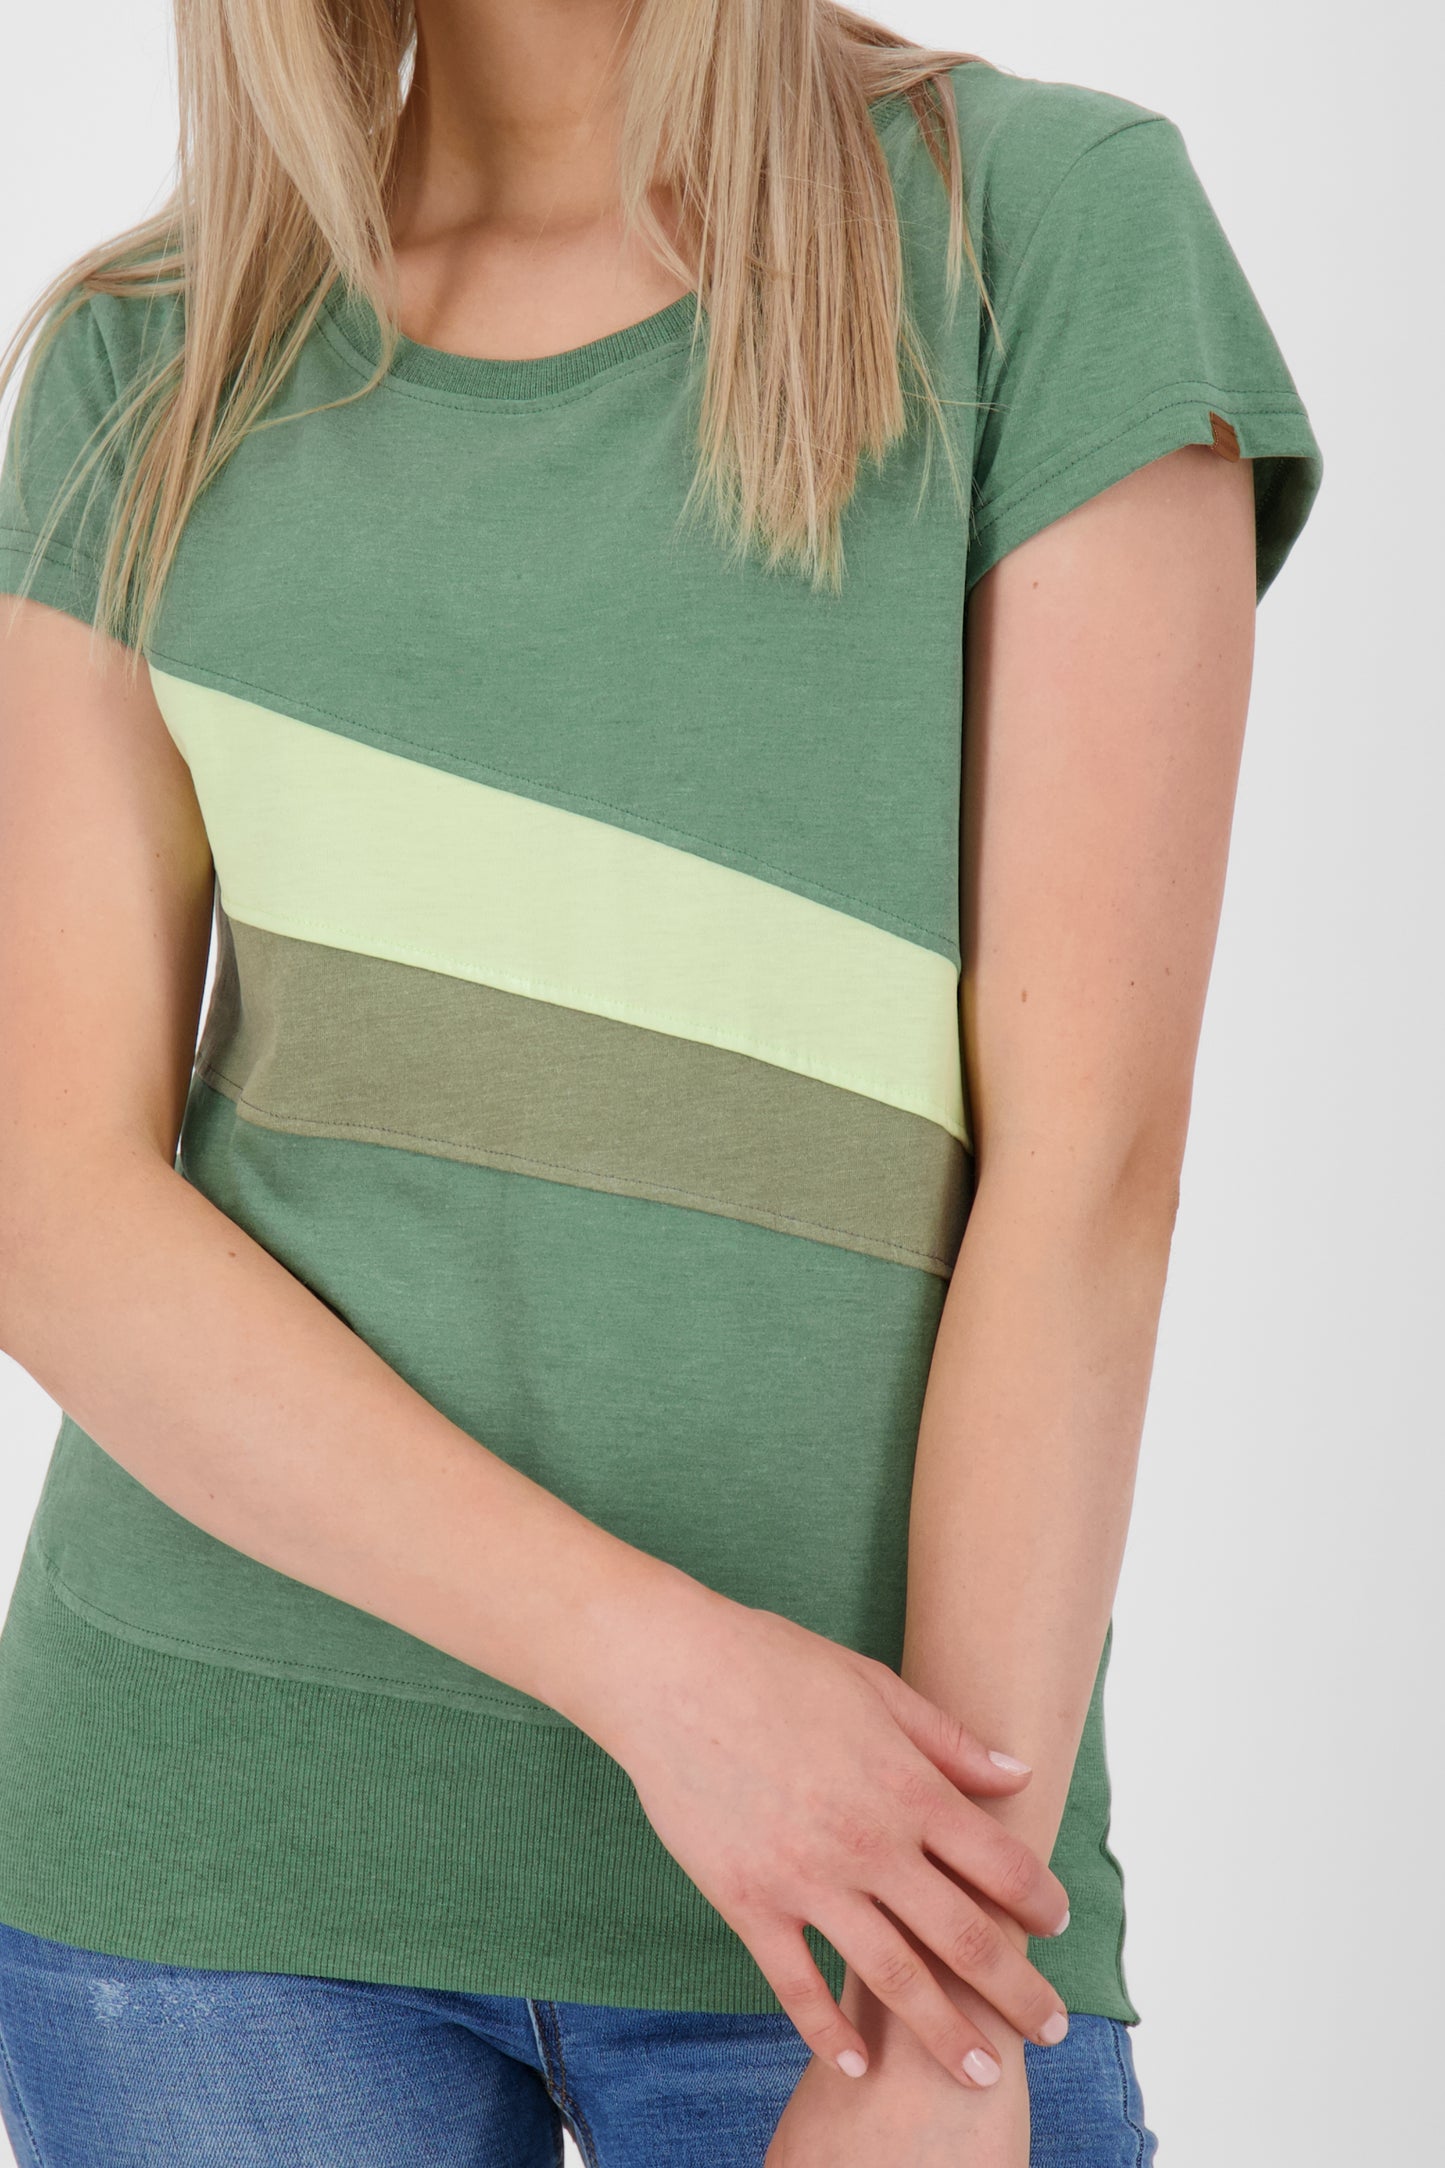 Eyecatcher Damen-T-Shirt CleaAK im Color-Streifen-Design Grün